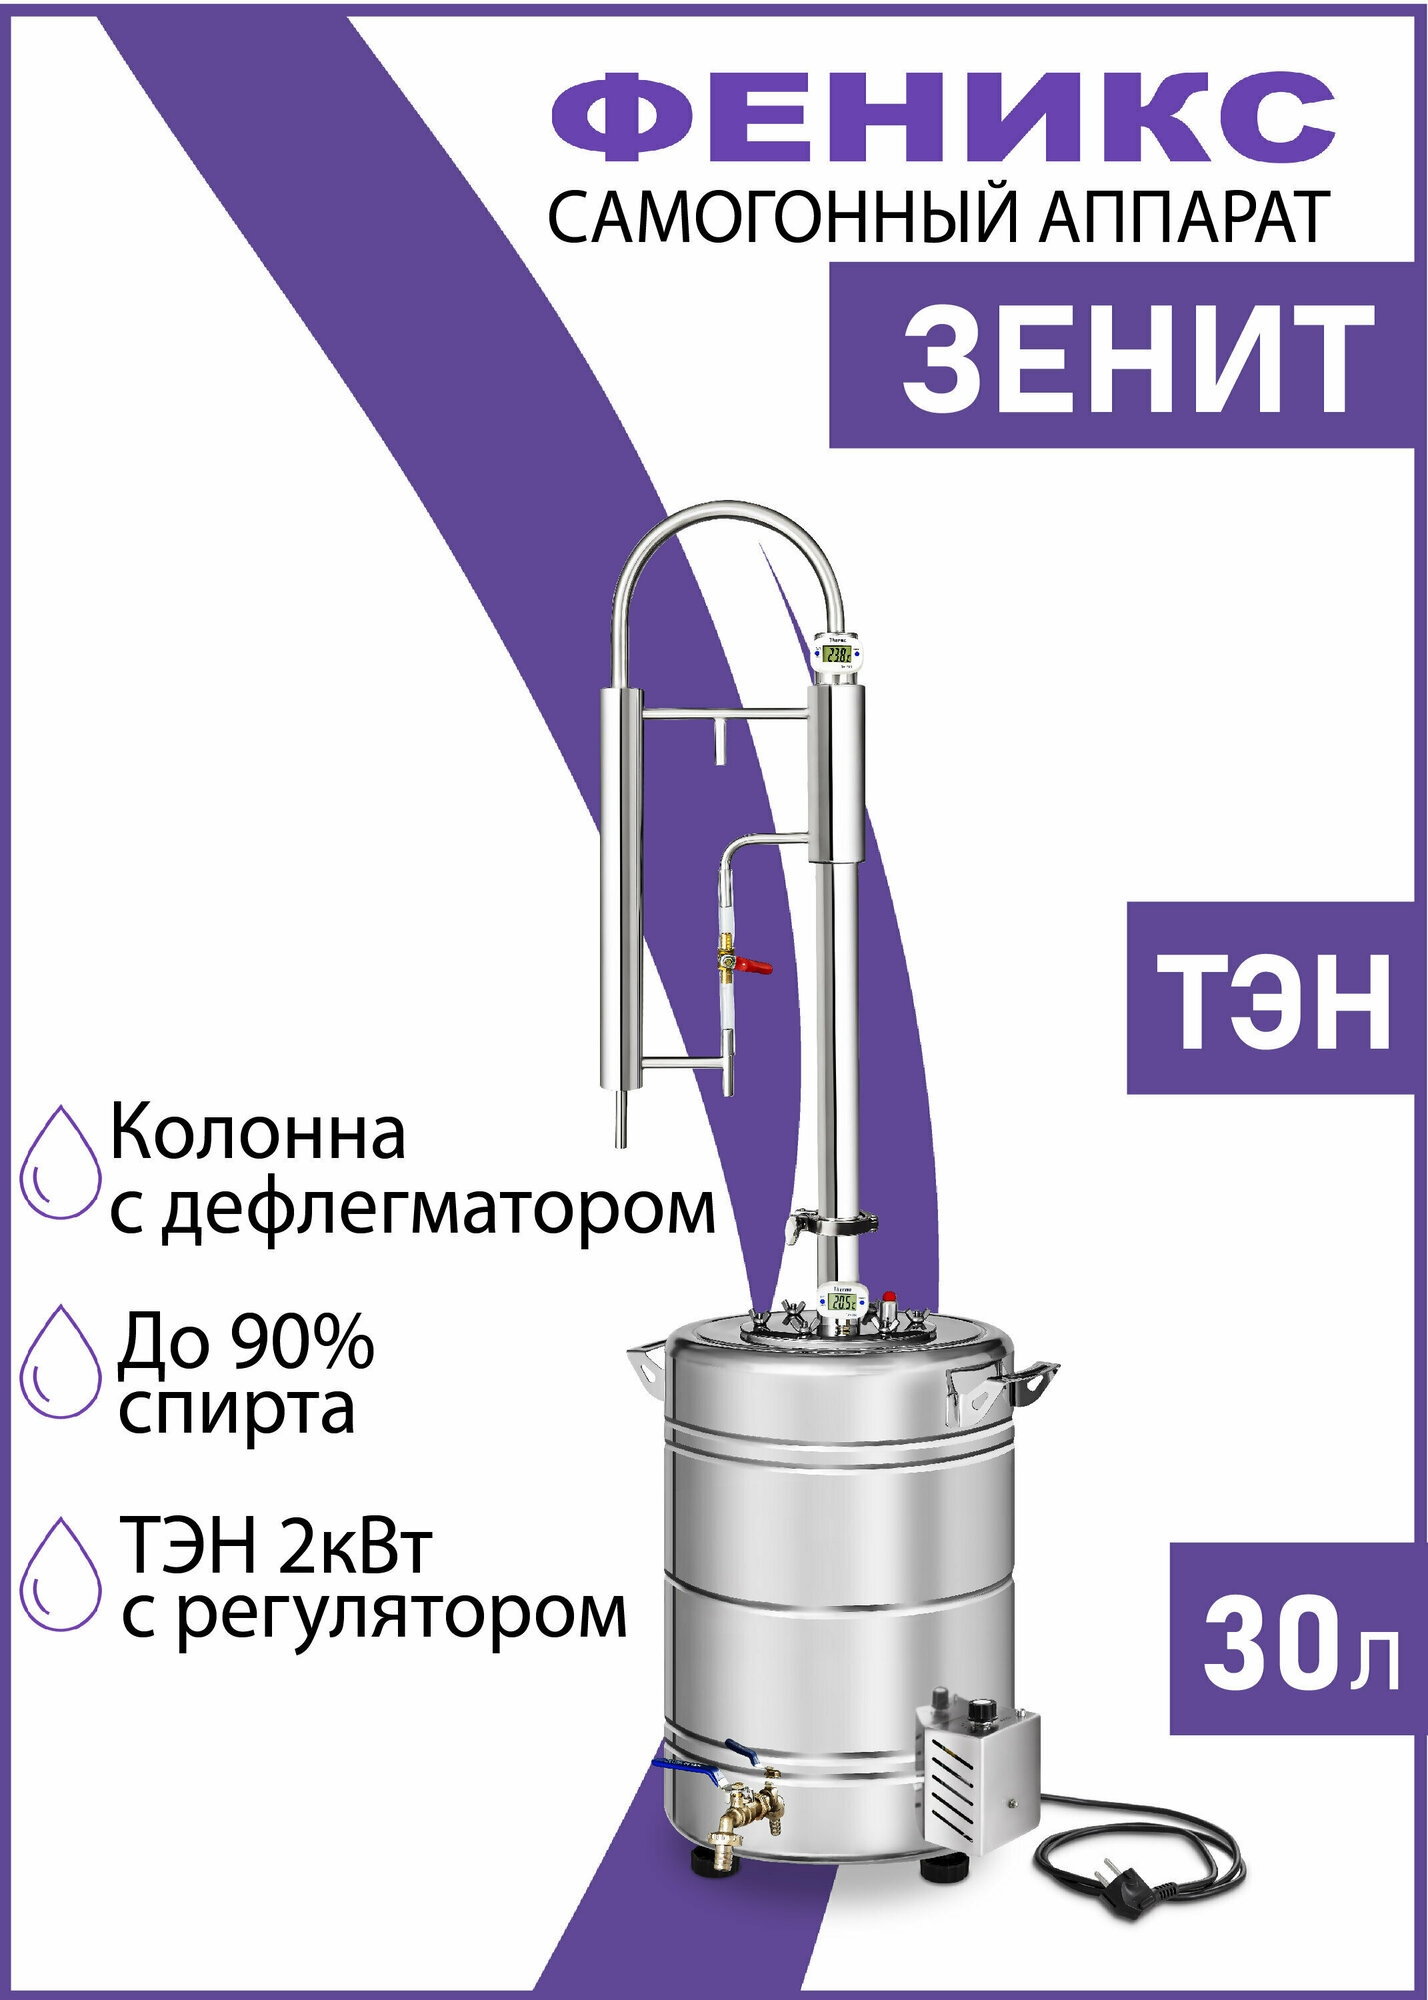 Самогонный аппарат колонного типа Зенит, 30 литров (с ТЭН), дистиллятор для самогона